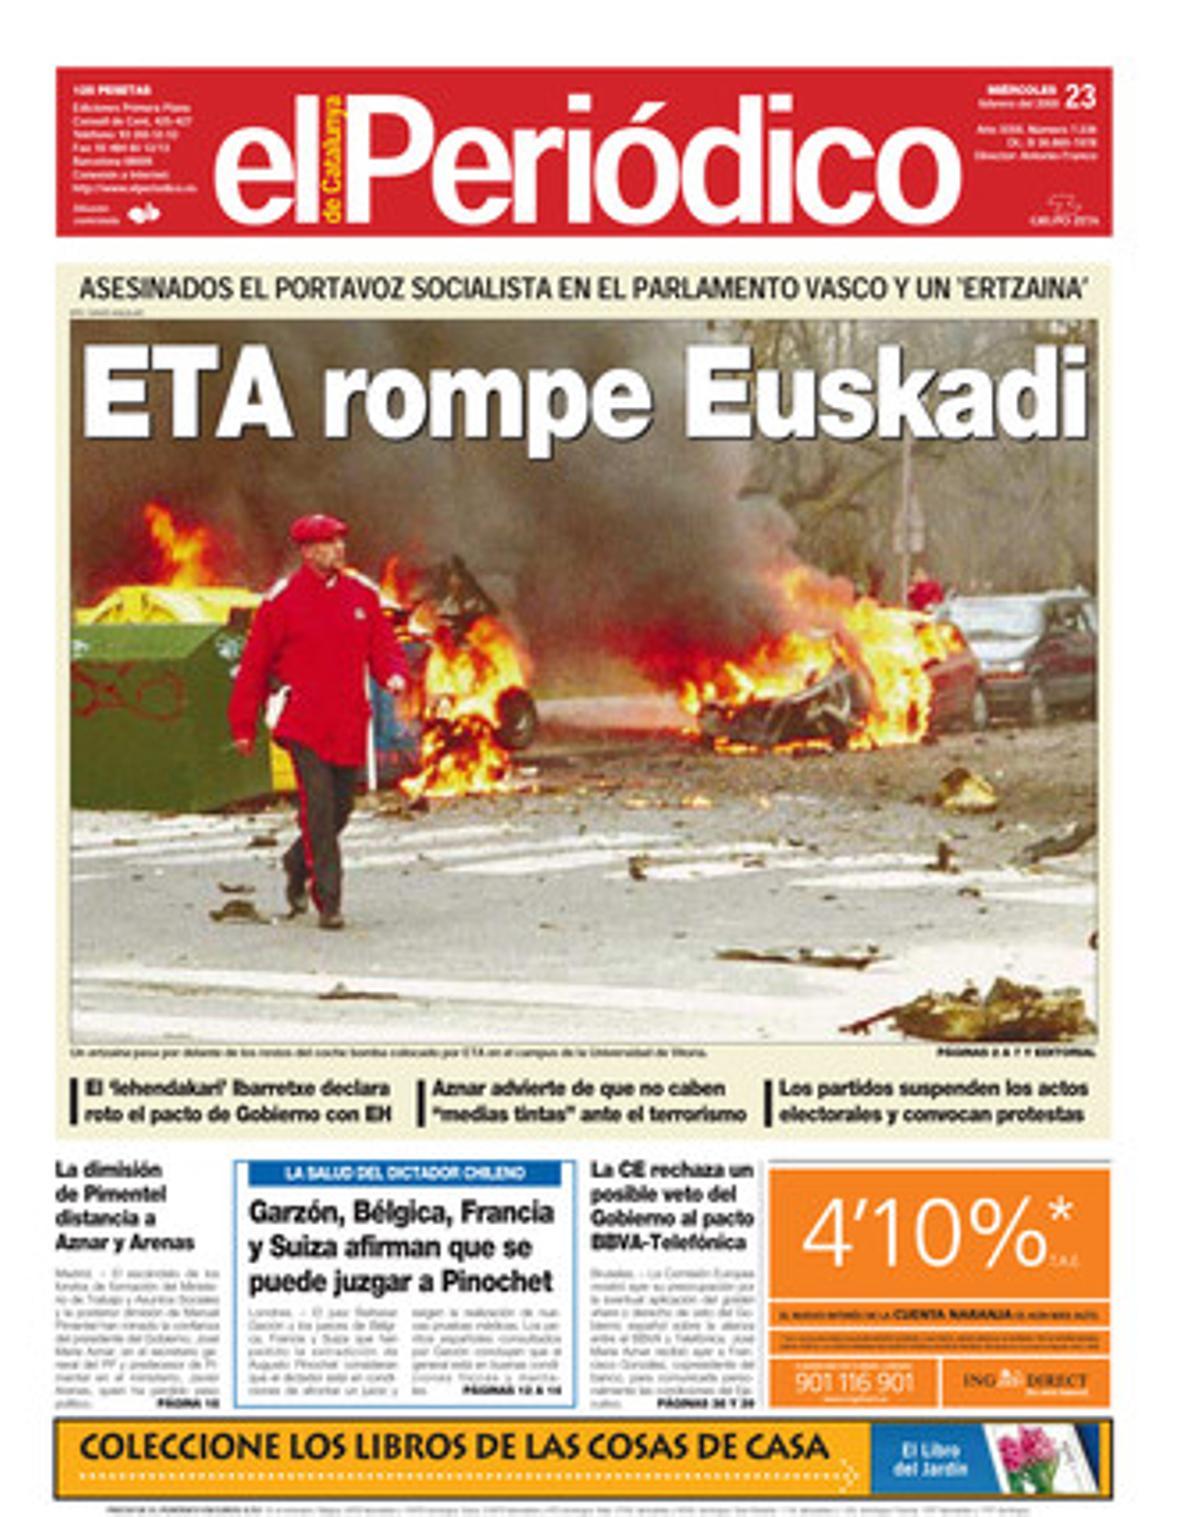 ETA assassina el portaveu socialista al Parlament basc i unertzaina. 23/2/2000